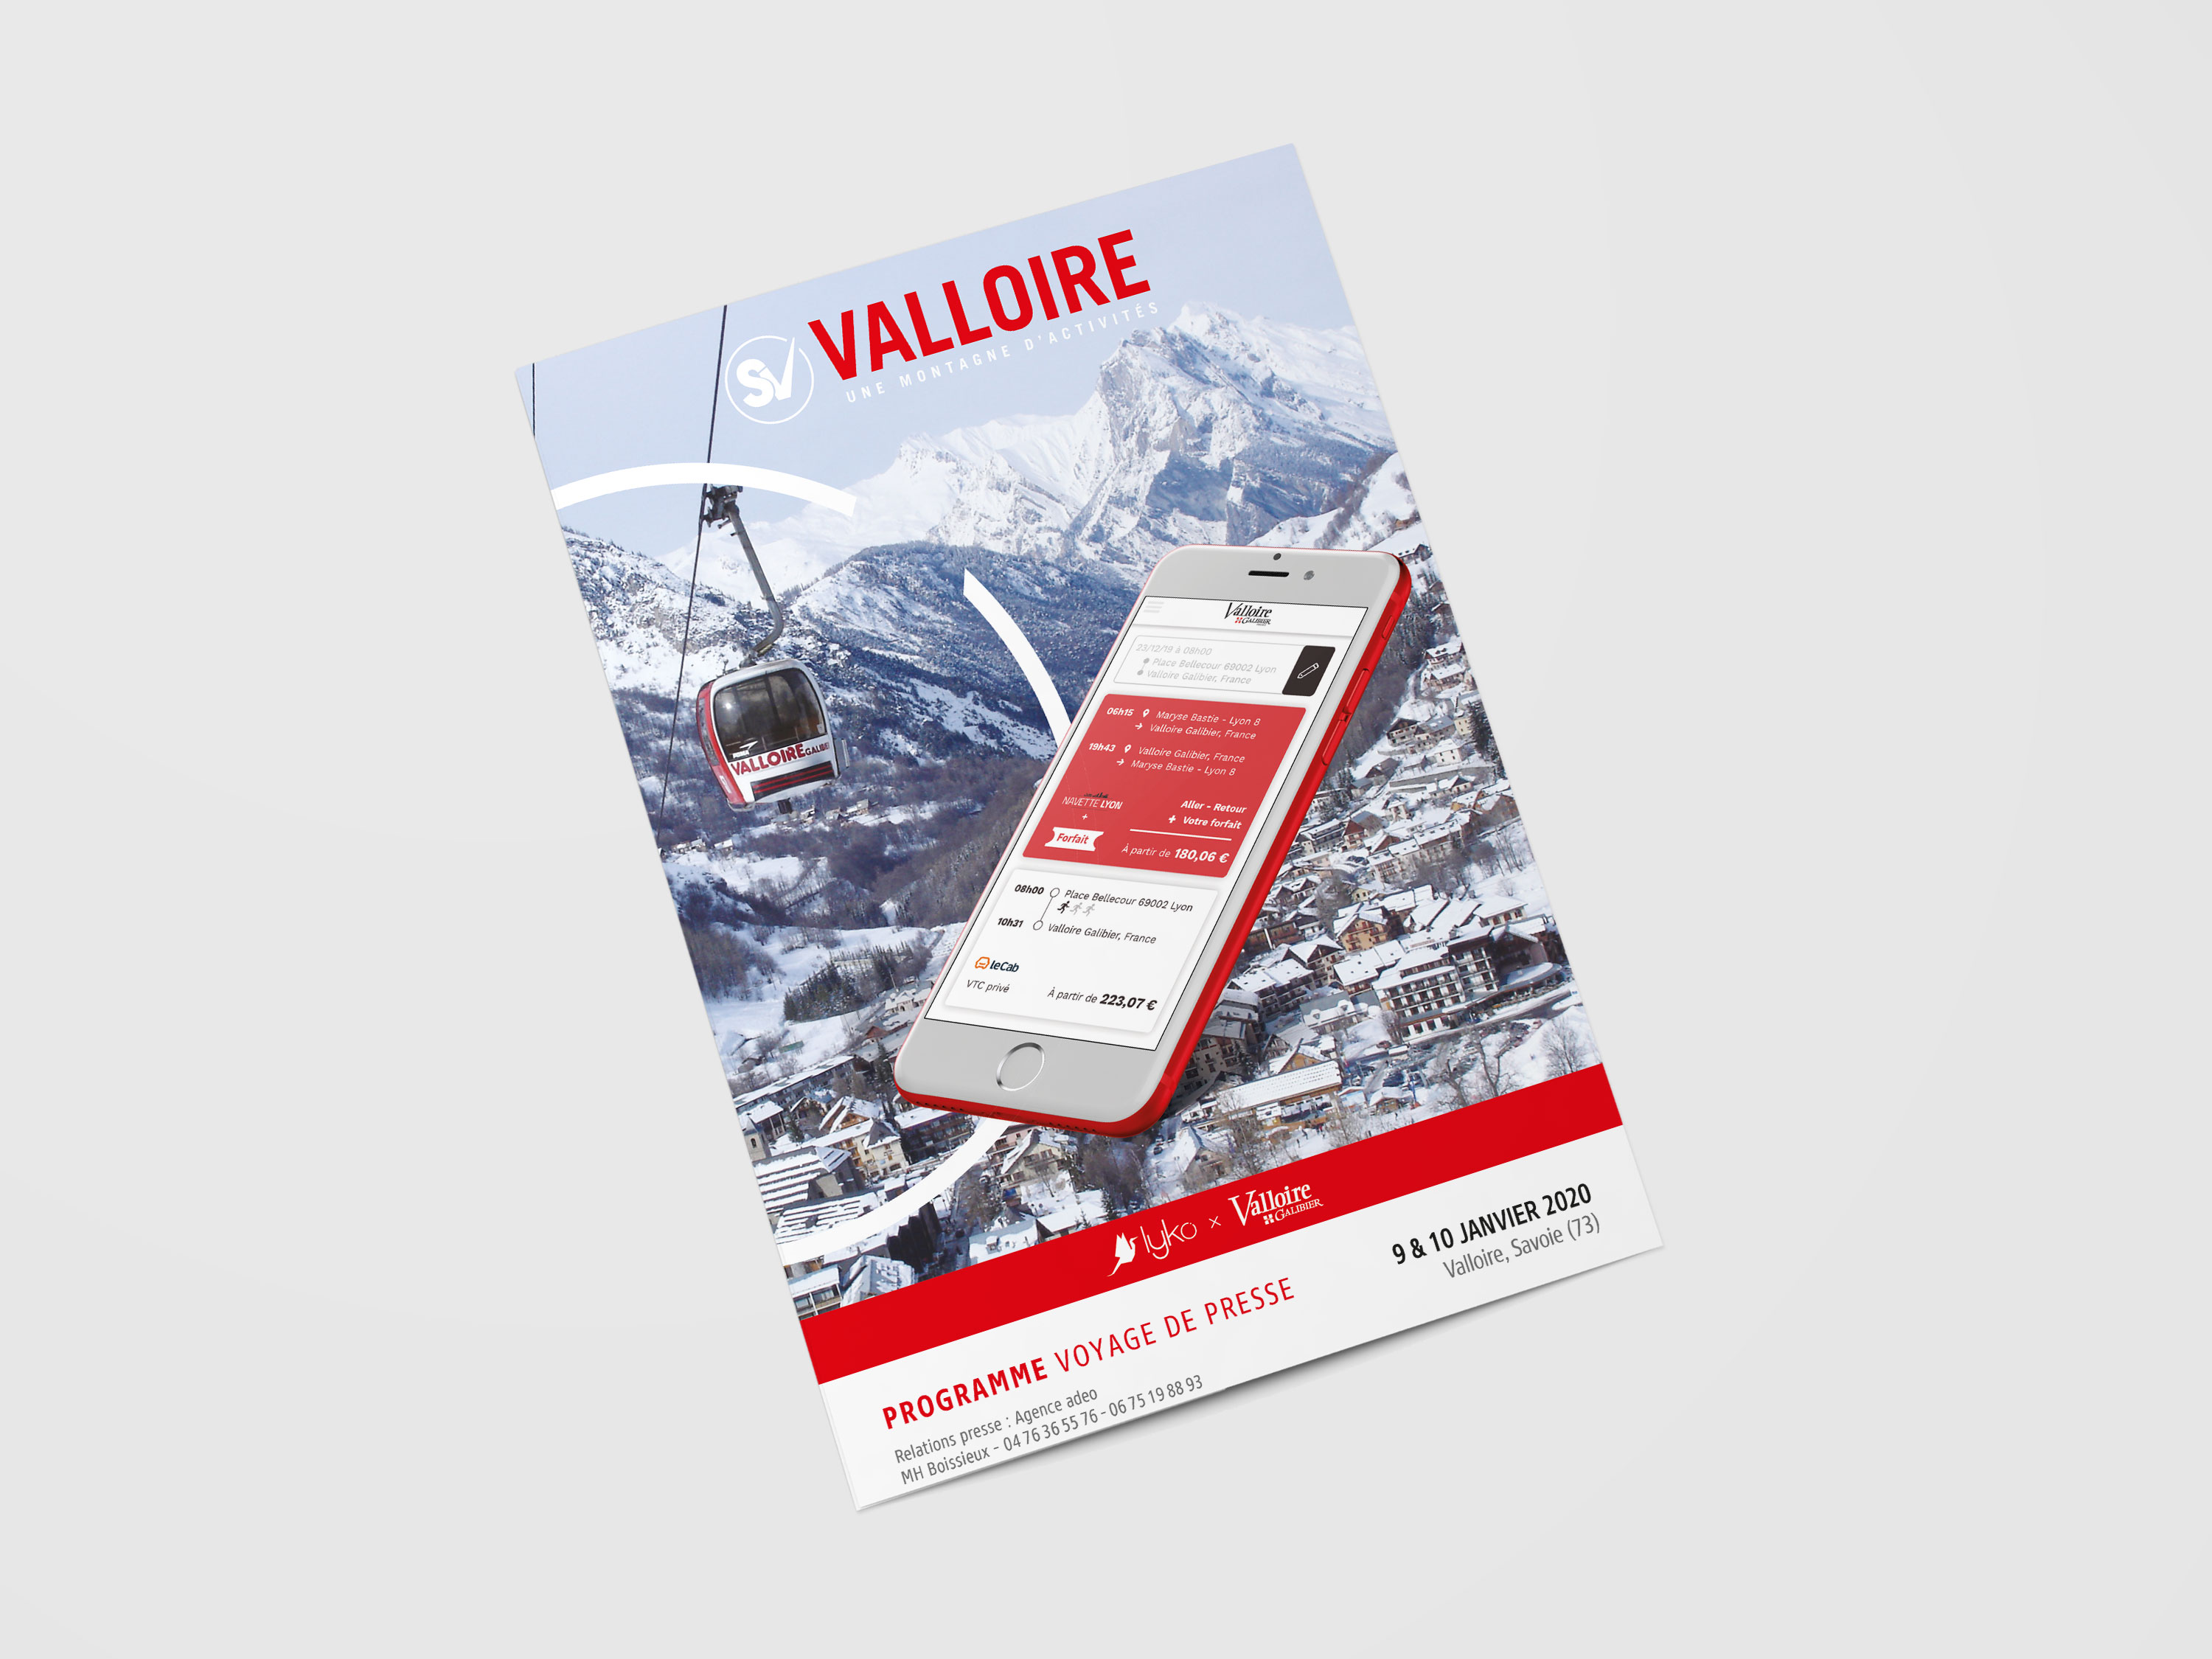 SEM VALLOIRE : Surf sur le Voyage de Presse – 9 & 10 janvier 2020 – Valloire (73)